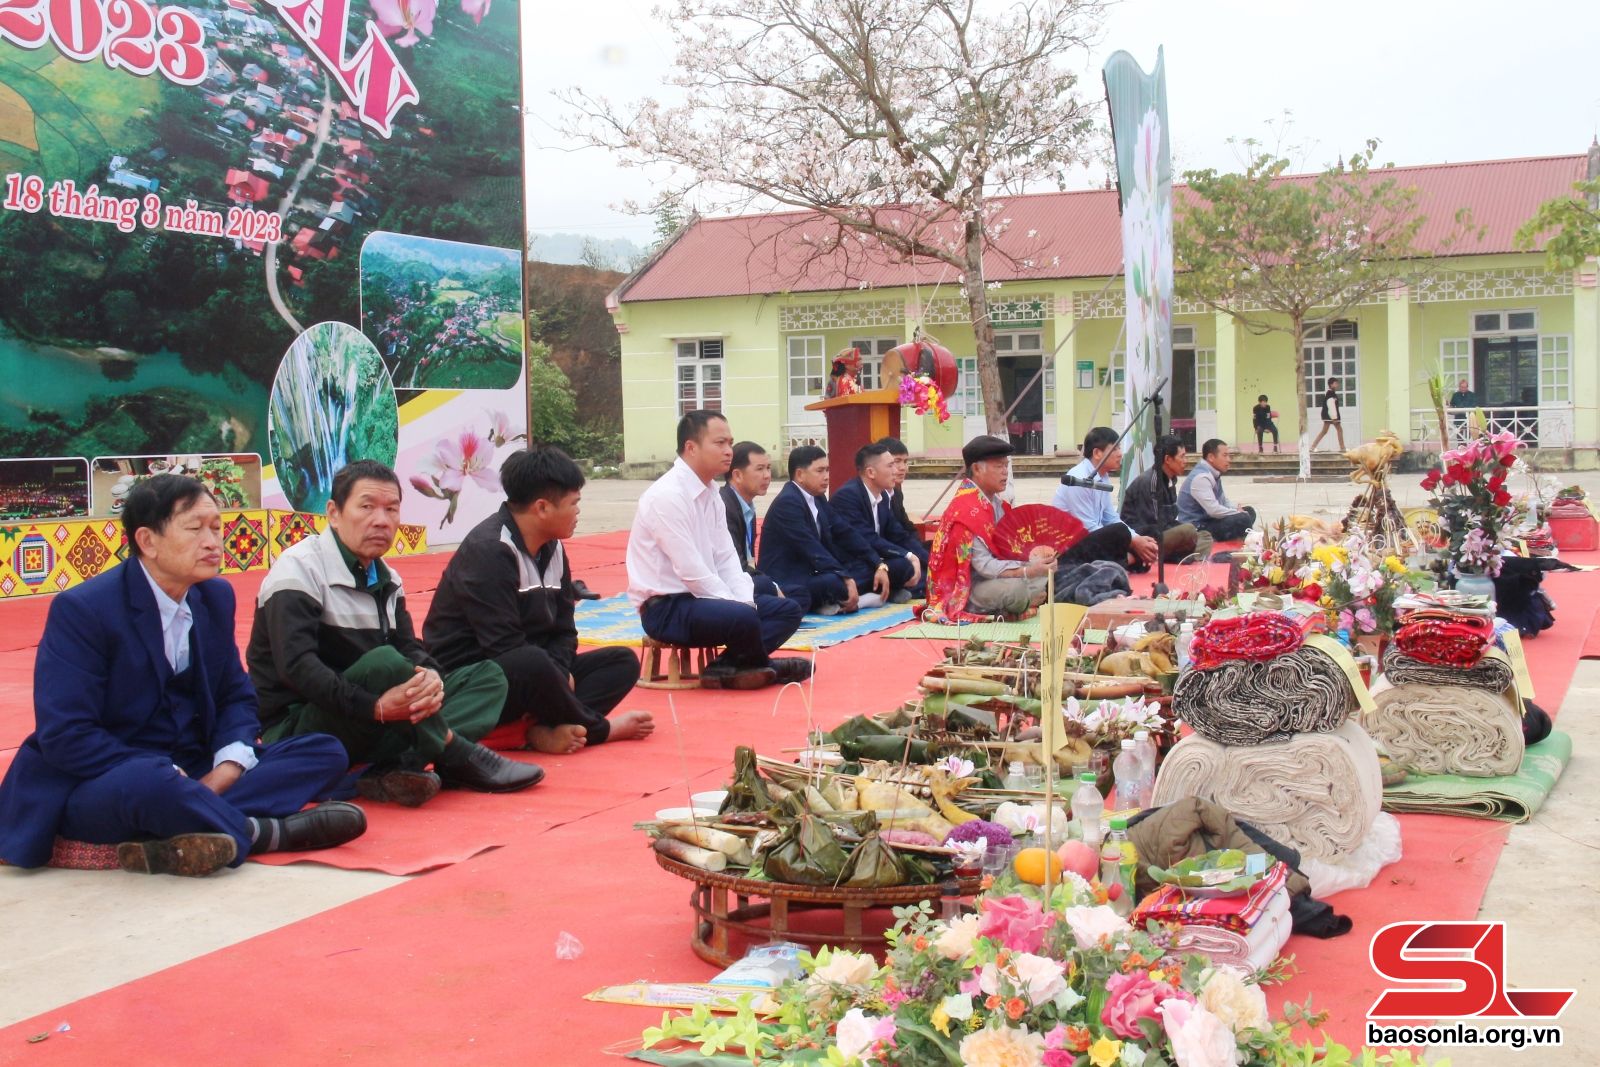 Kỷ niệm Ngày văn hóa các dân tộc Việt Nam 19/4: Bức tranh đa sắc của văn hóa các dân tộc Sơn La - Ảnh 1.